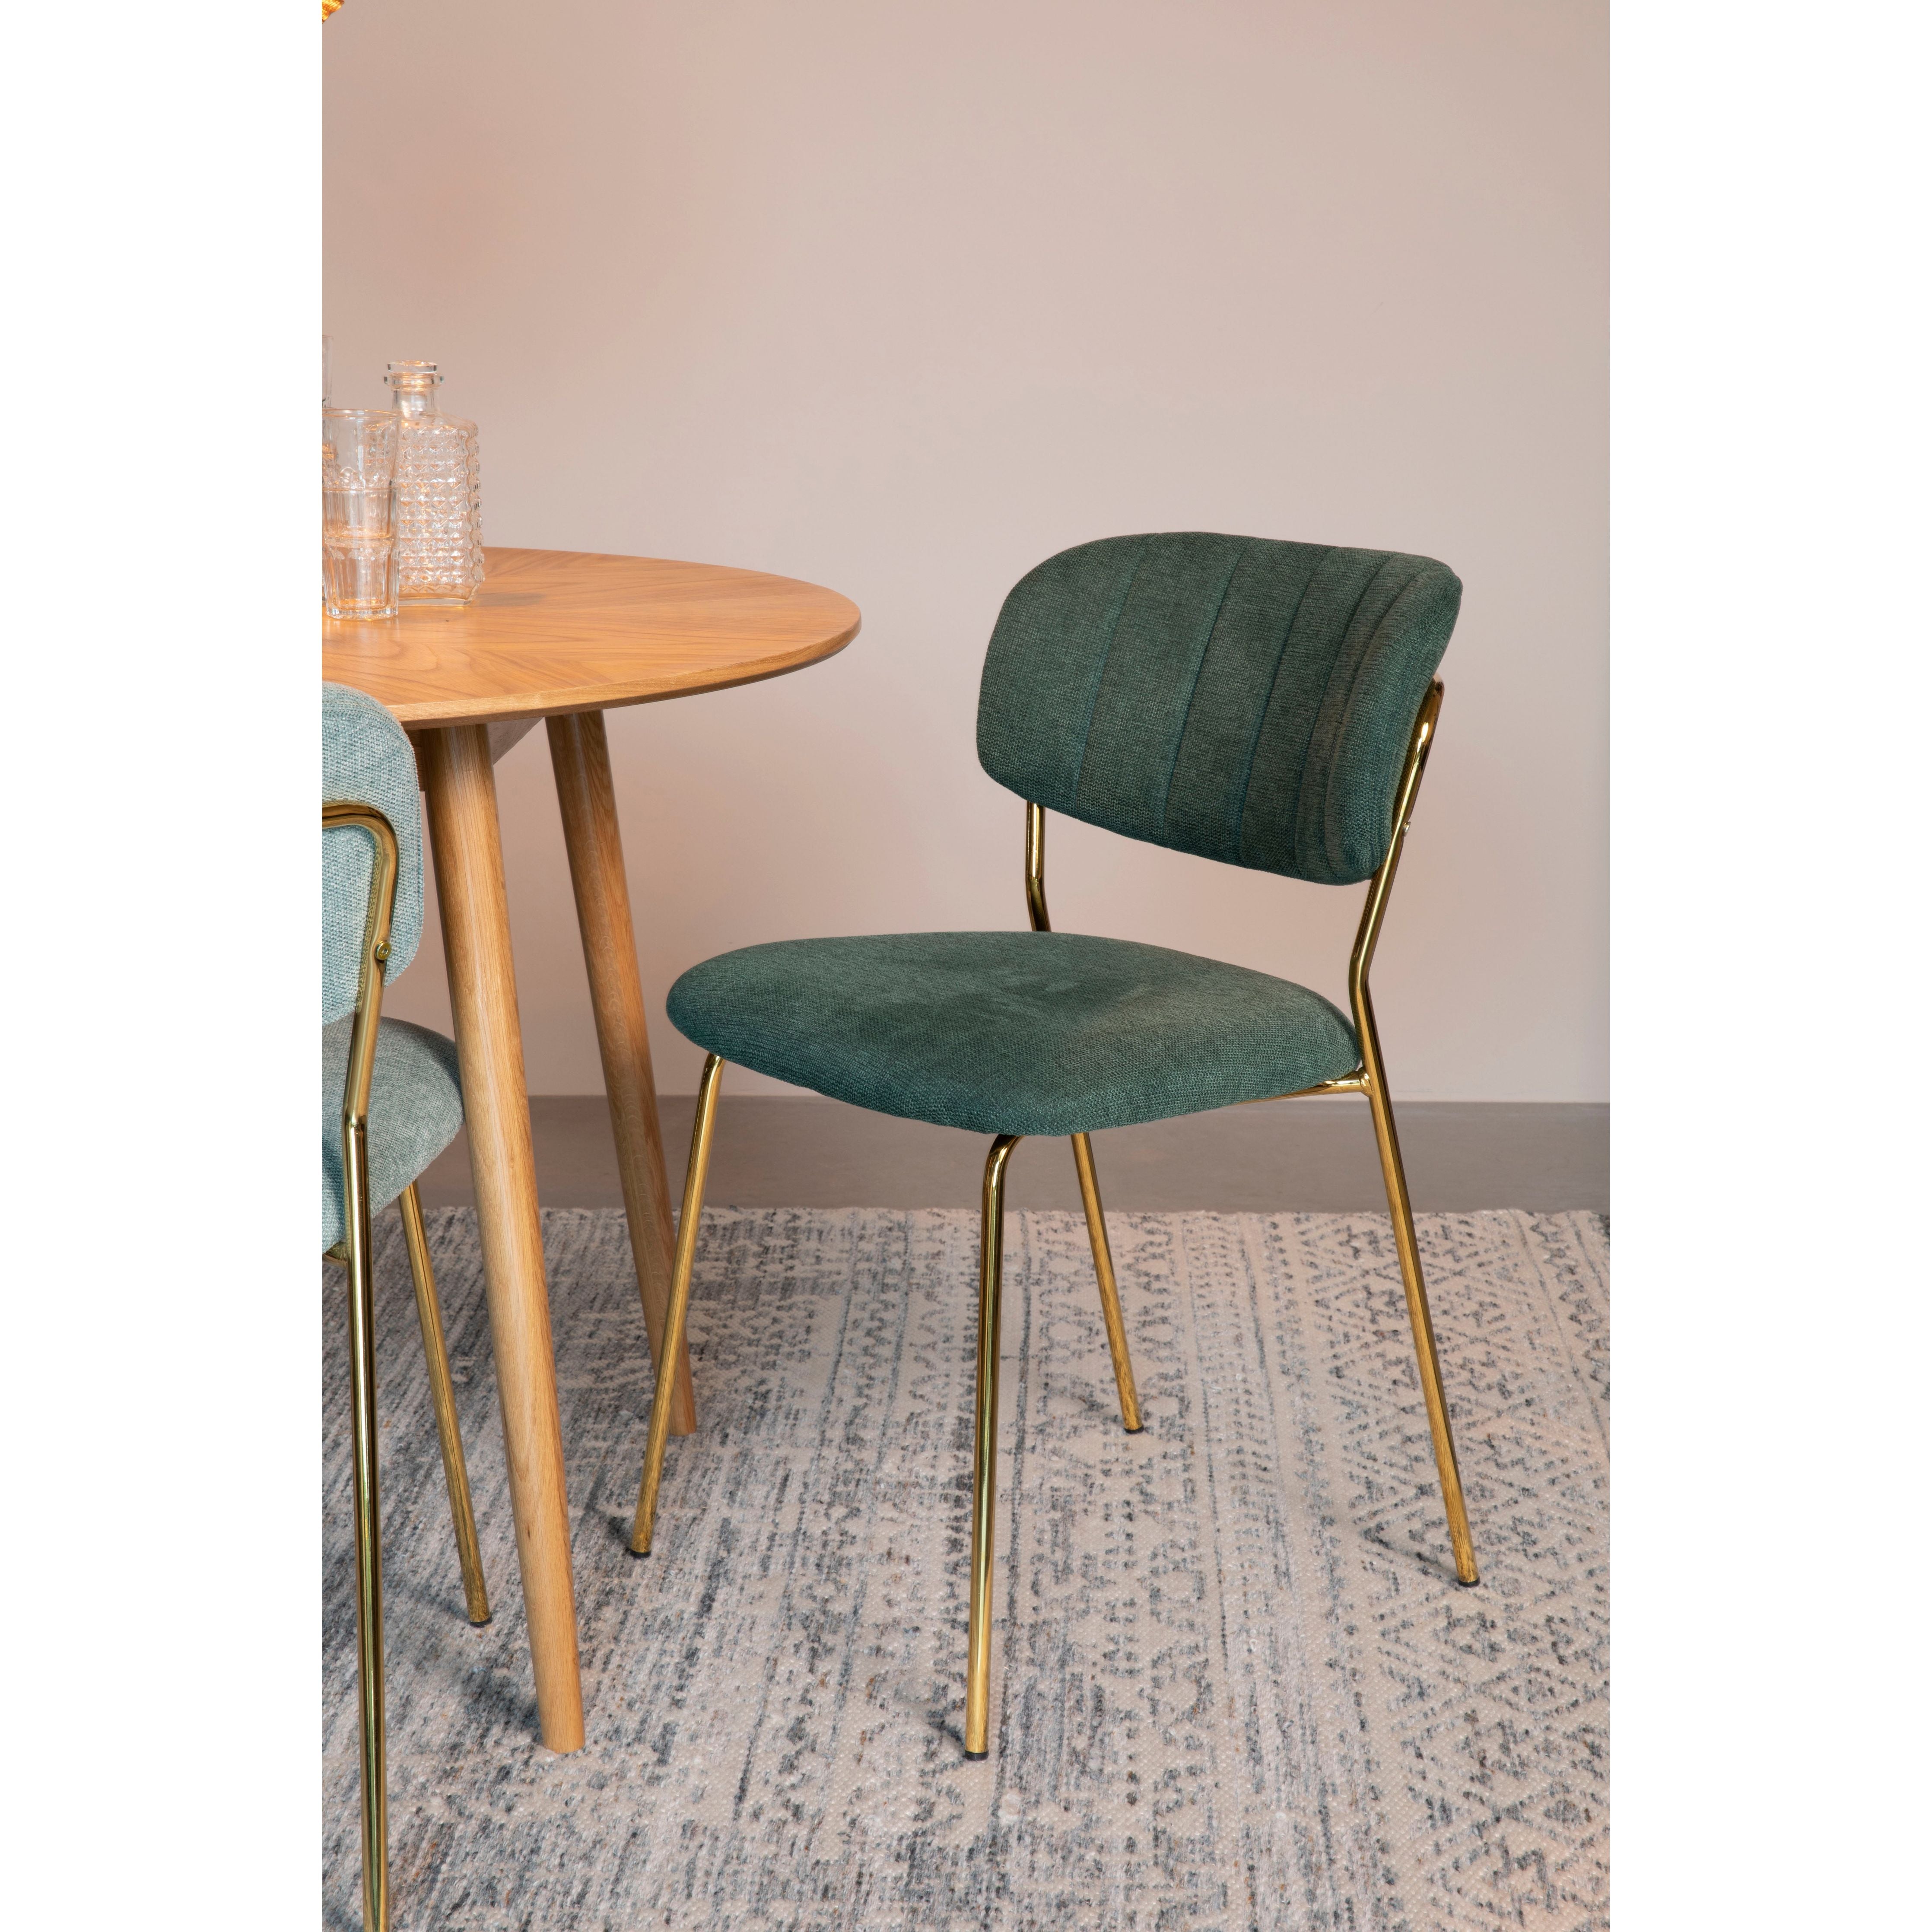 Chair jolien gold/dark green